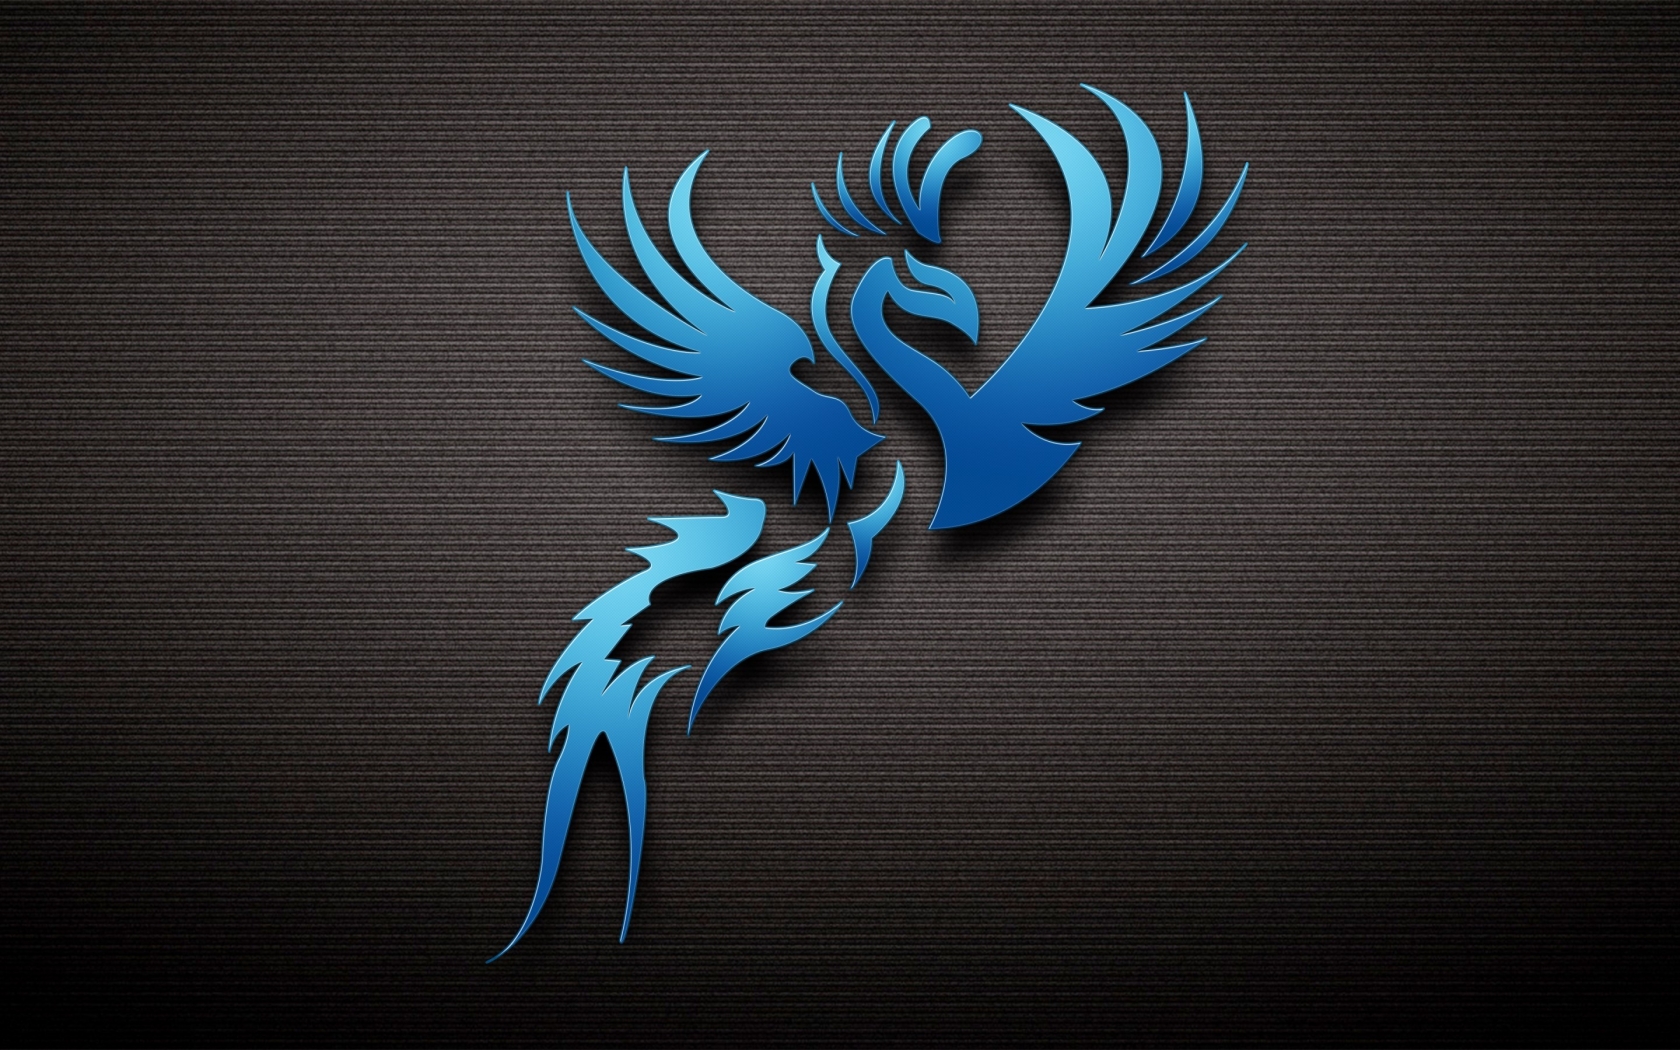 Dark Blue Bird for 1680 x 1050 widescreen resolution